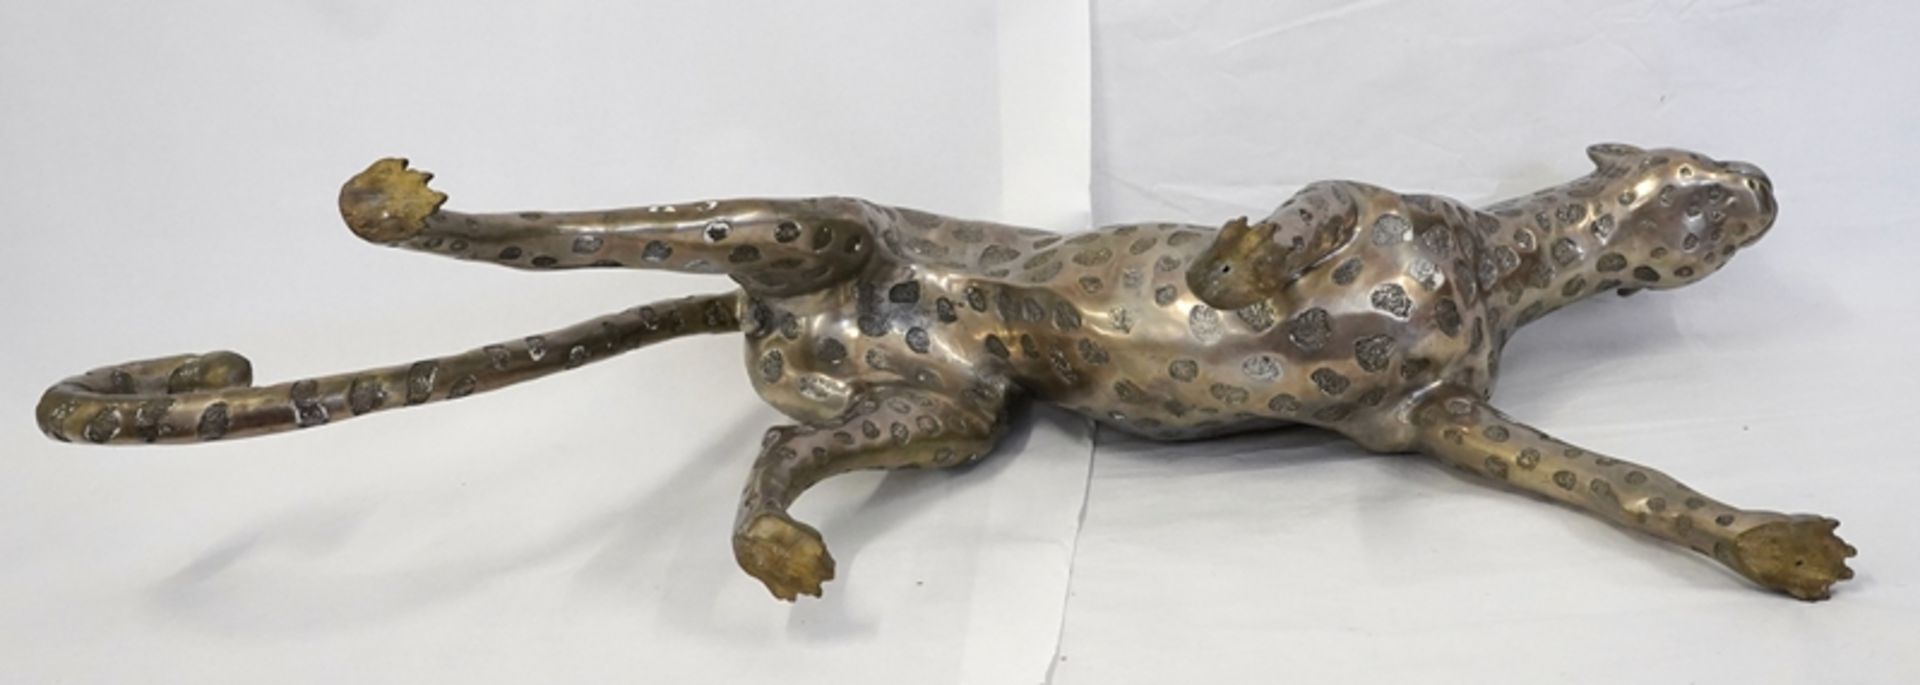 Dekorativer Gepard | Decorative cheetah - Image 7 of 7